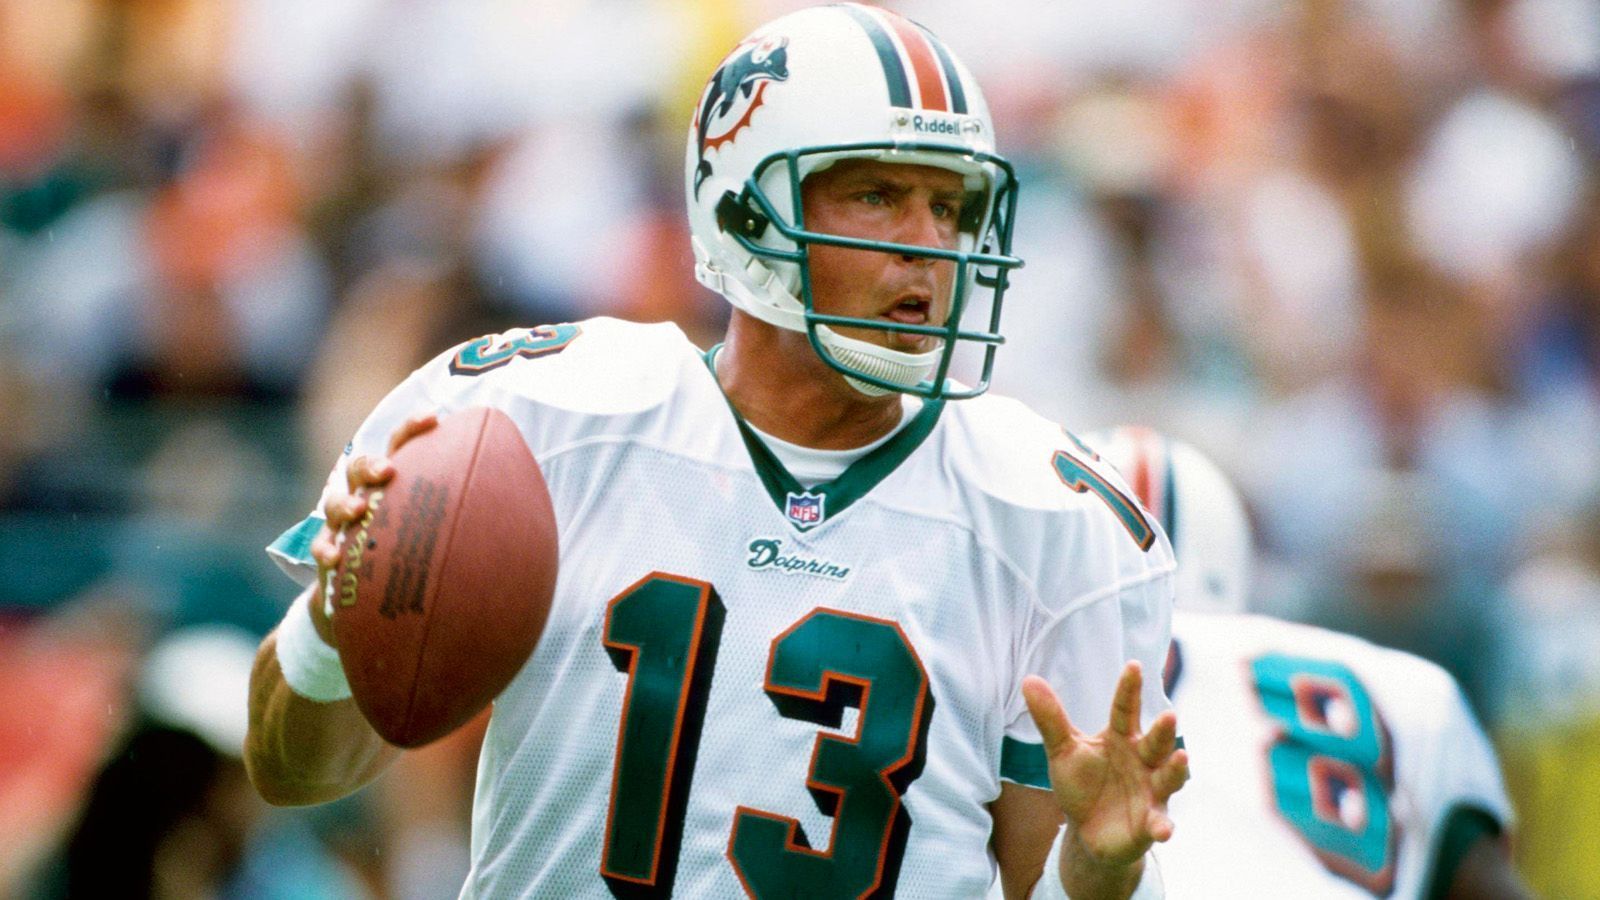 
                <strong>Miami Dolphins: Dan Marino (Quarterback)</strong><br>
                Marino gilt als einer der besten Quarterbacks aller Zeiten und hält zahlreiche NFL-Rekorde.
              